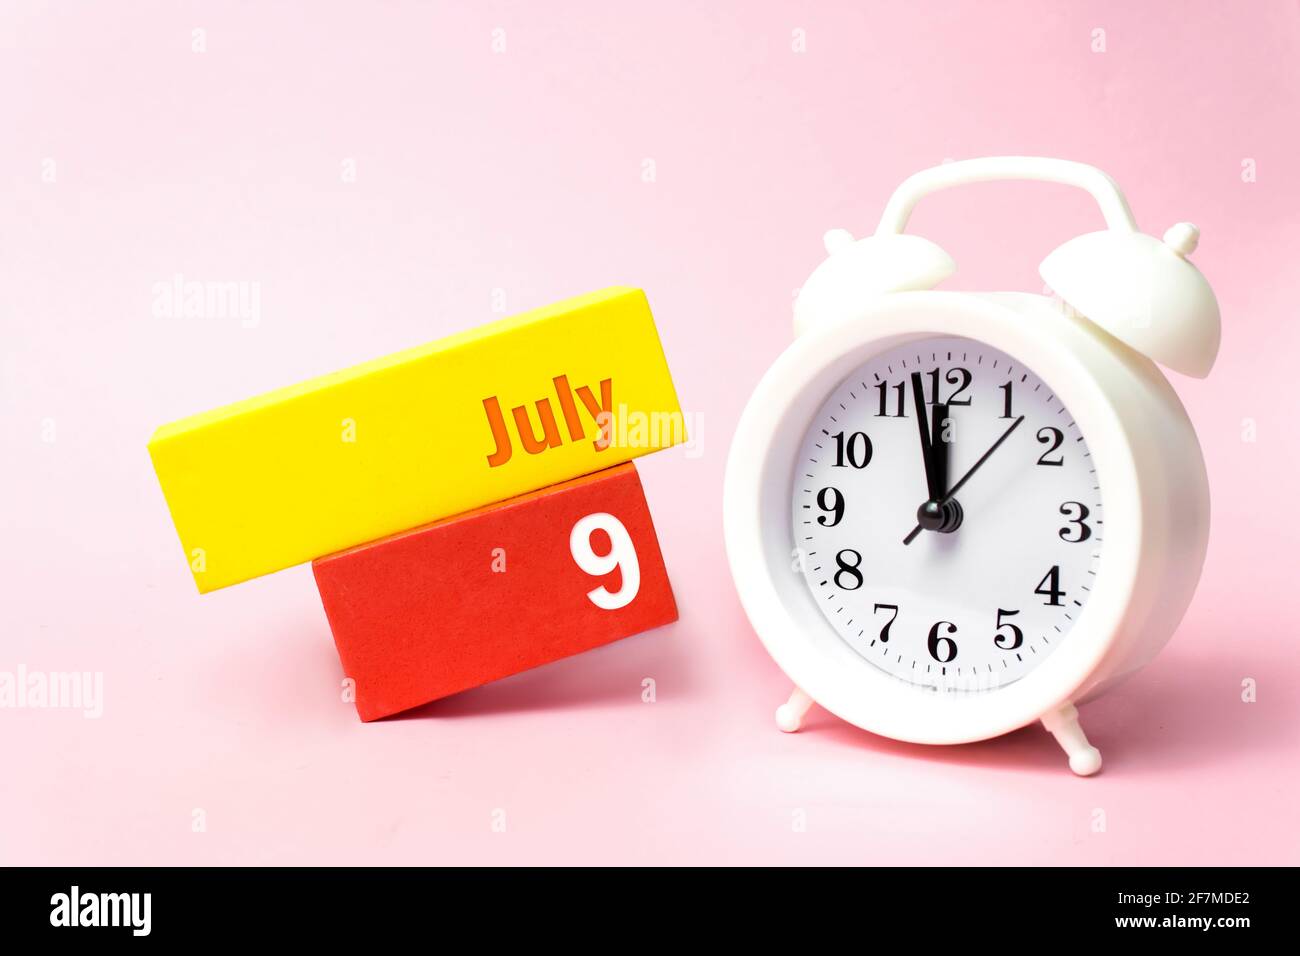 9 juillet. Jour 9 du mois, date du calendrier. Réveil blanc sur fond rose pastel. Concept mois d'été, jour de l'année Banque D'Images